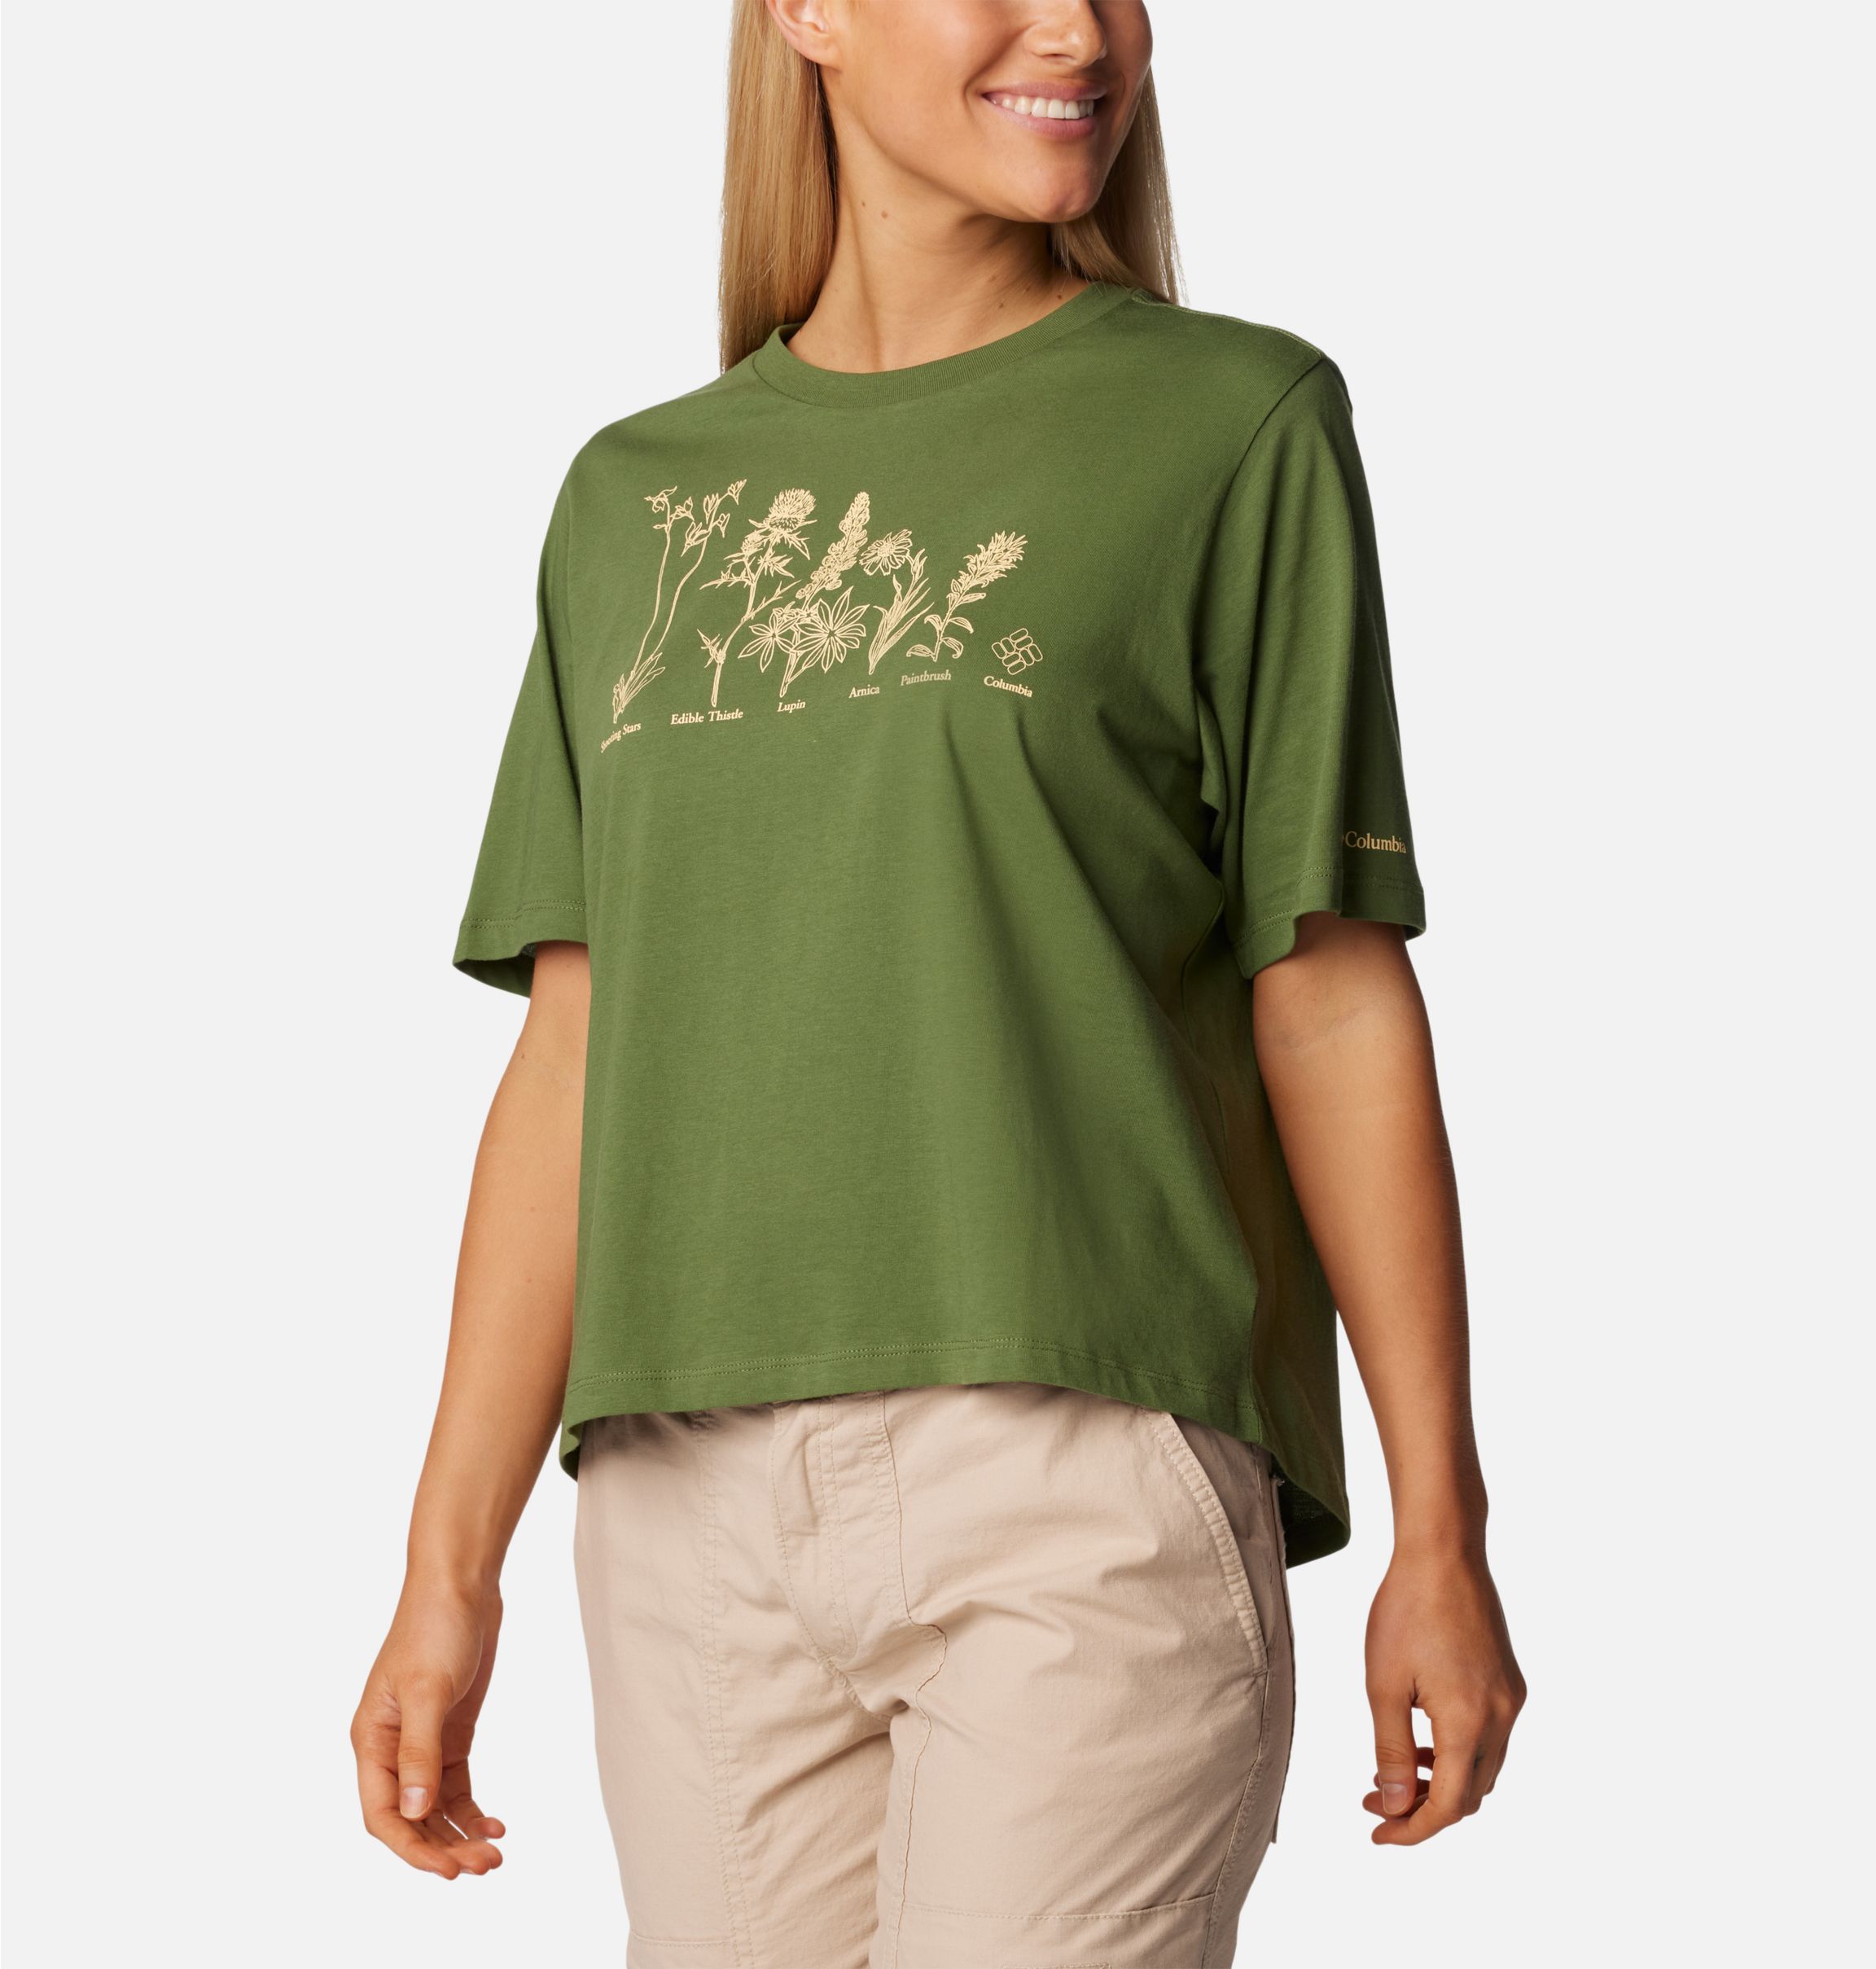 Tee-shirt running respirant Femme Cascade Turquoise